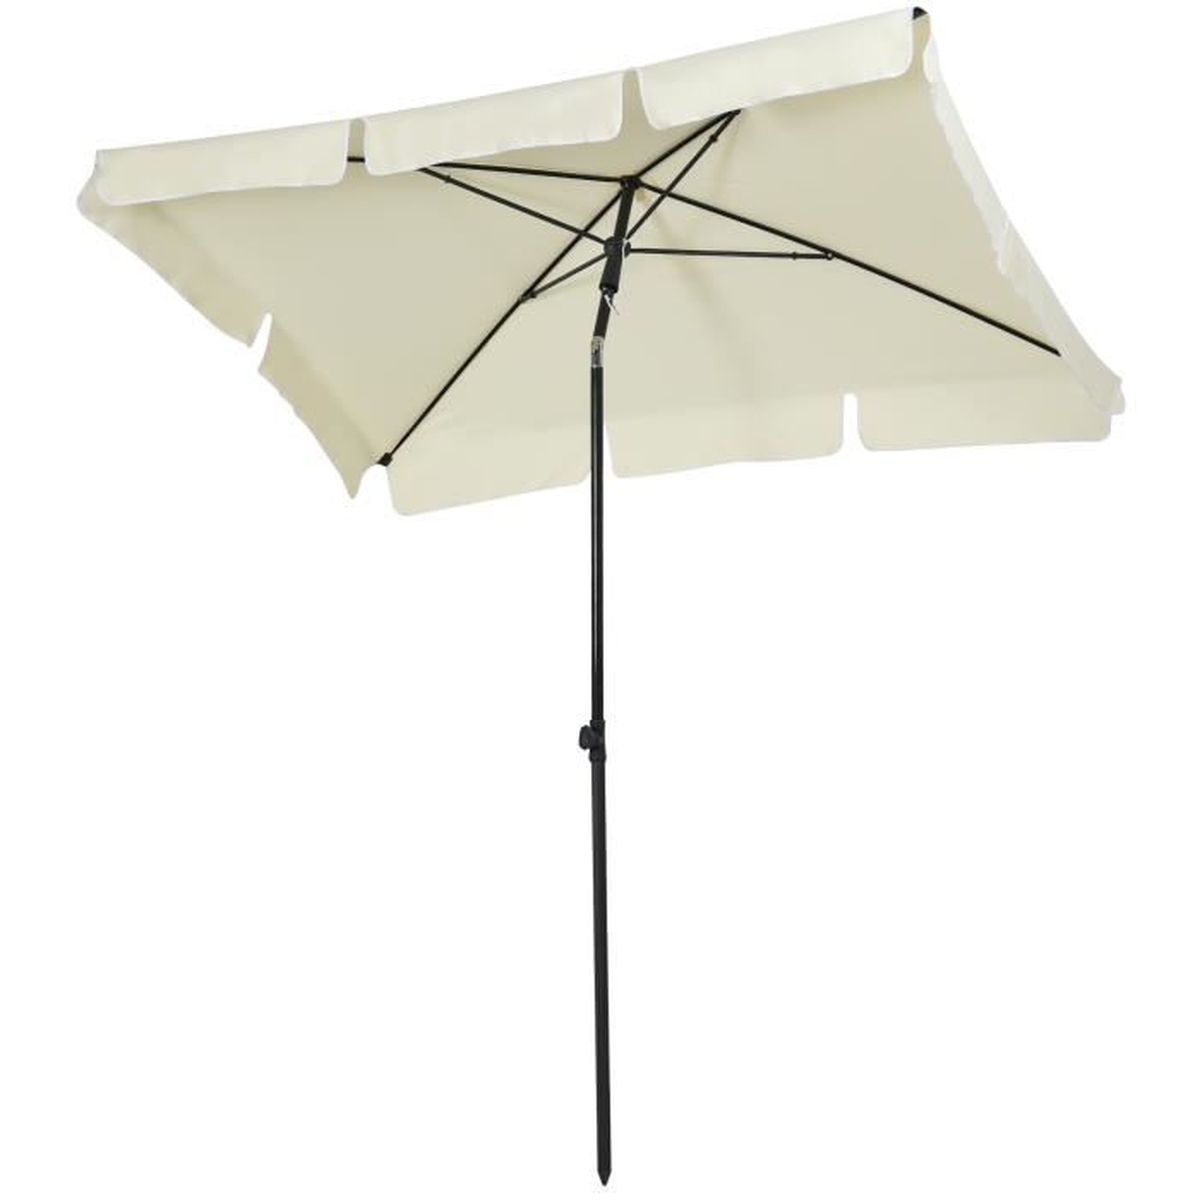 Parasol marché Parapluie Jardin Parasol Plage Parapluie Parapluie réglable en hauteur NEUF 